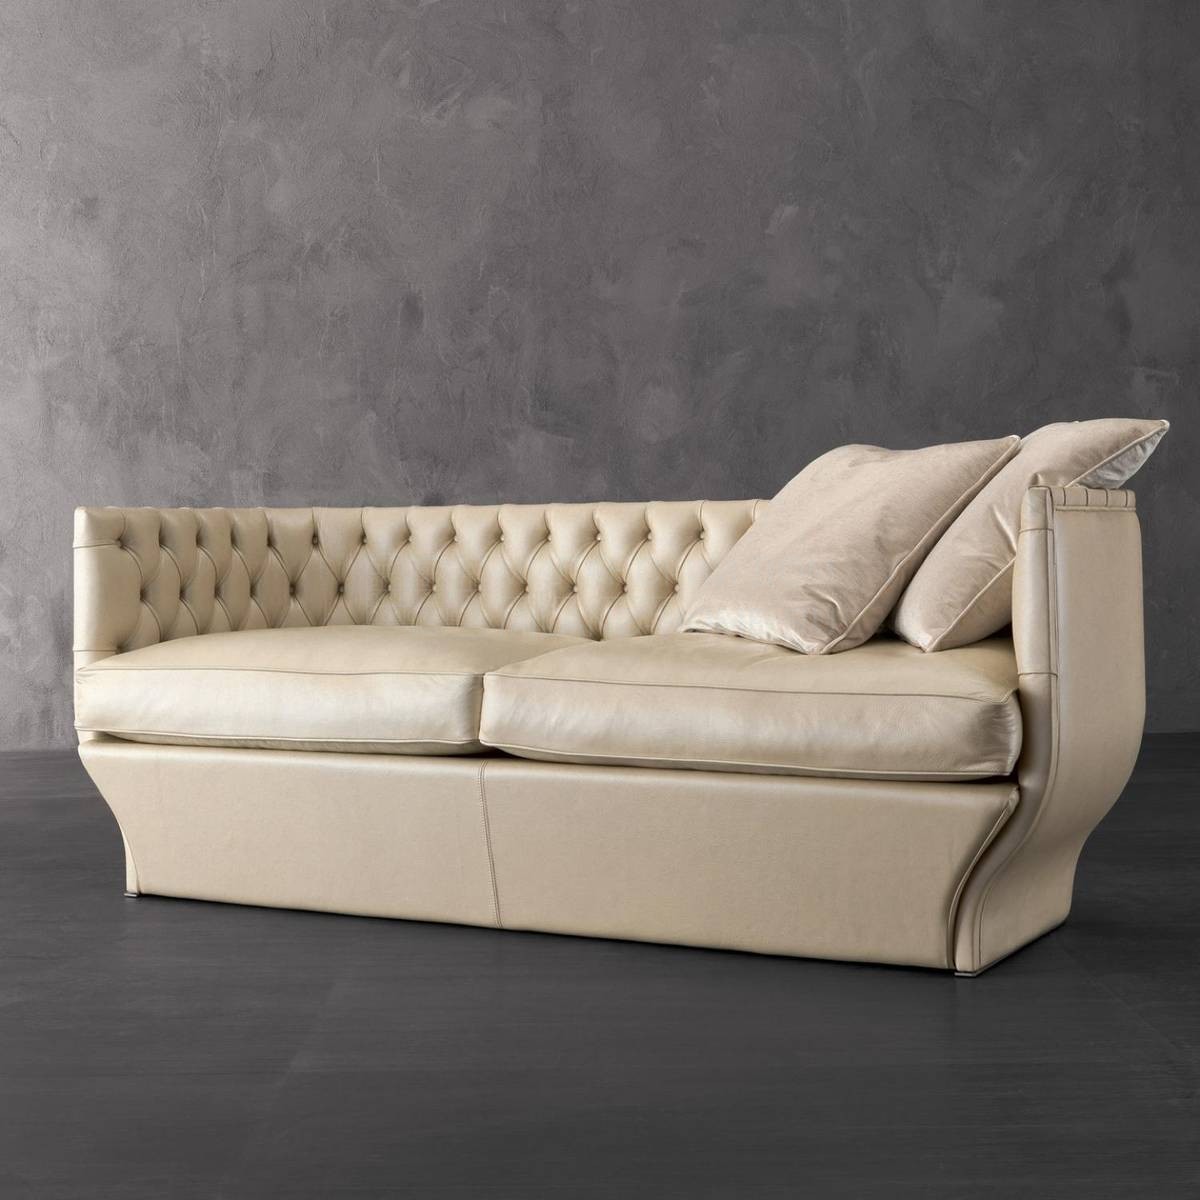 Прямой диван Giselle/W53 из Италии фабрики RUGIANO